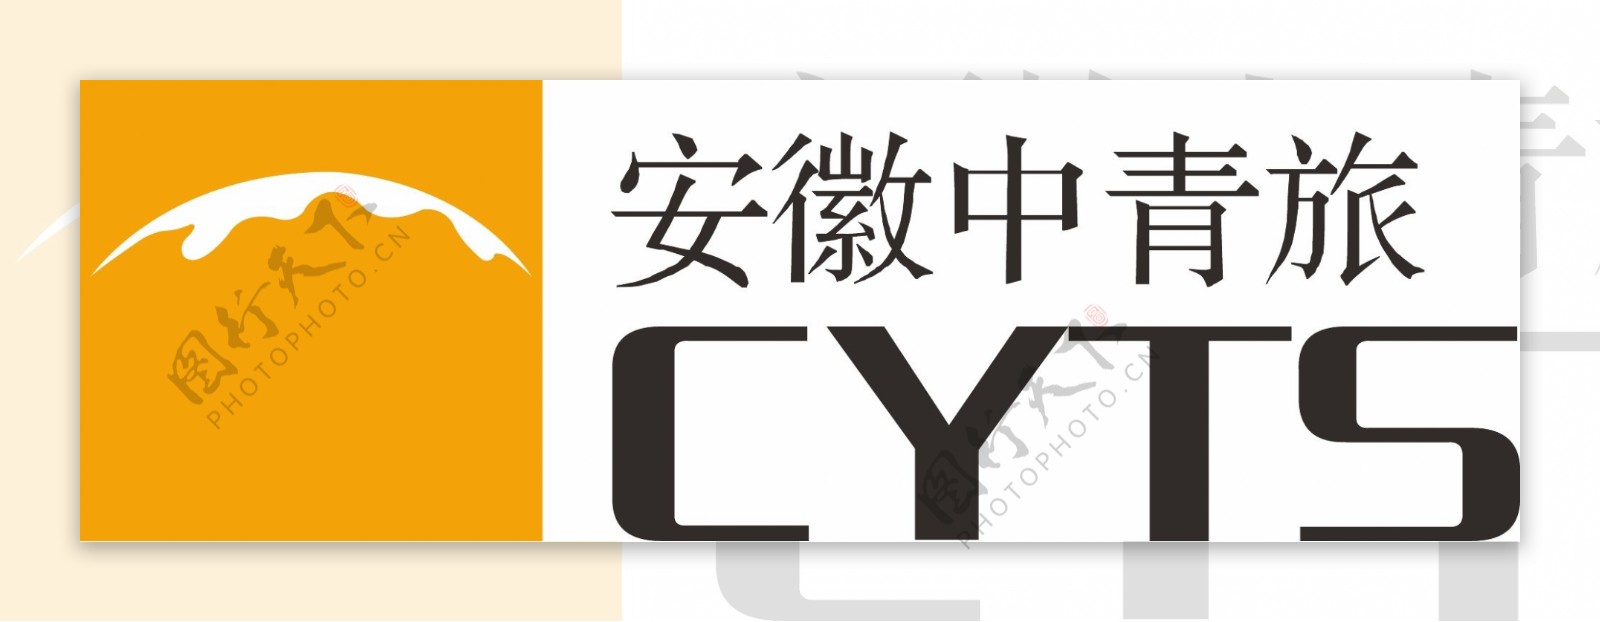 安徽中青旅logo图片